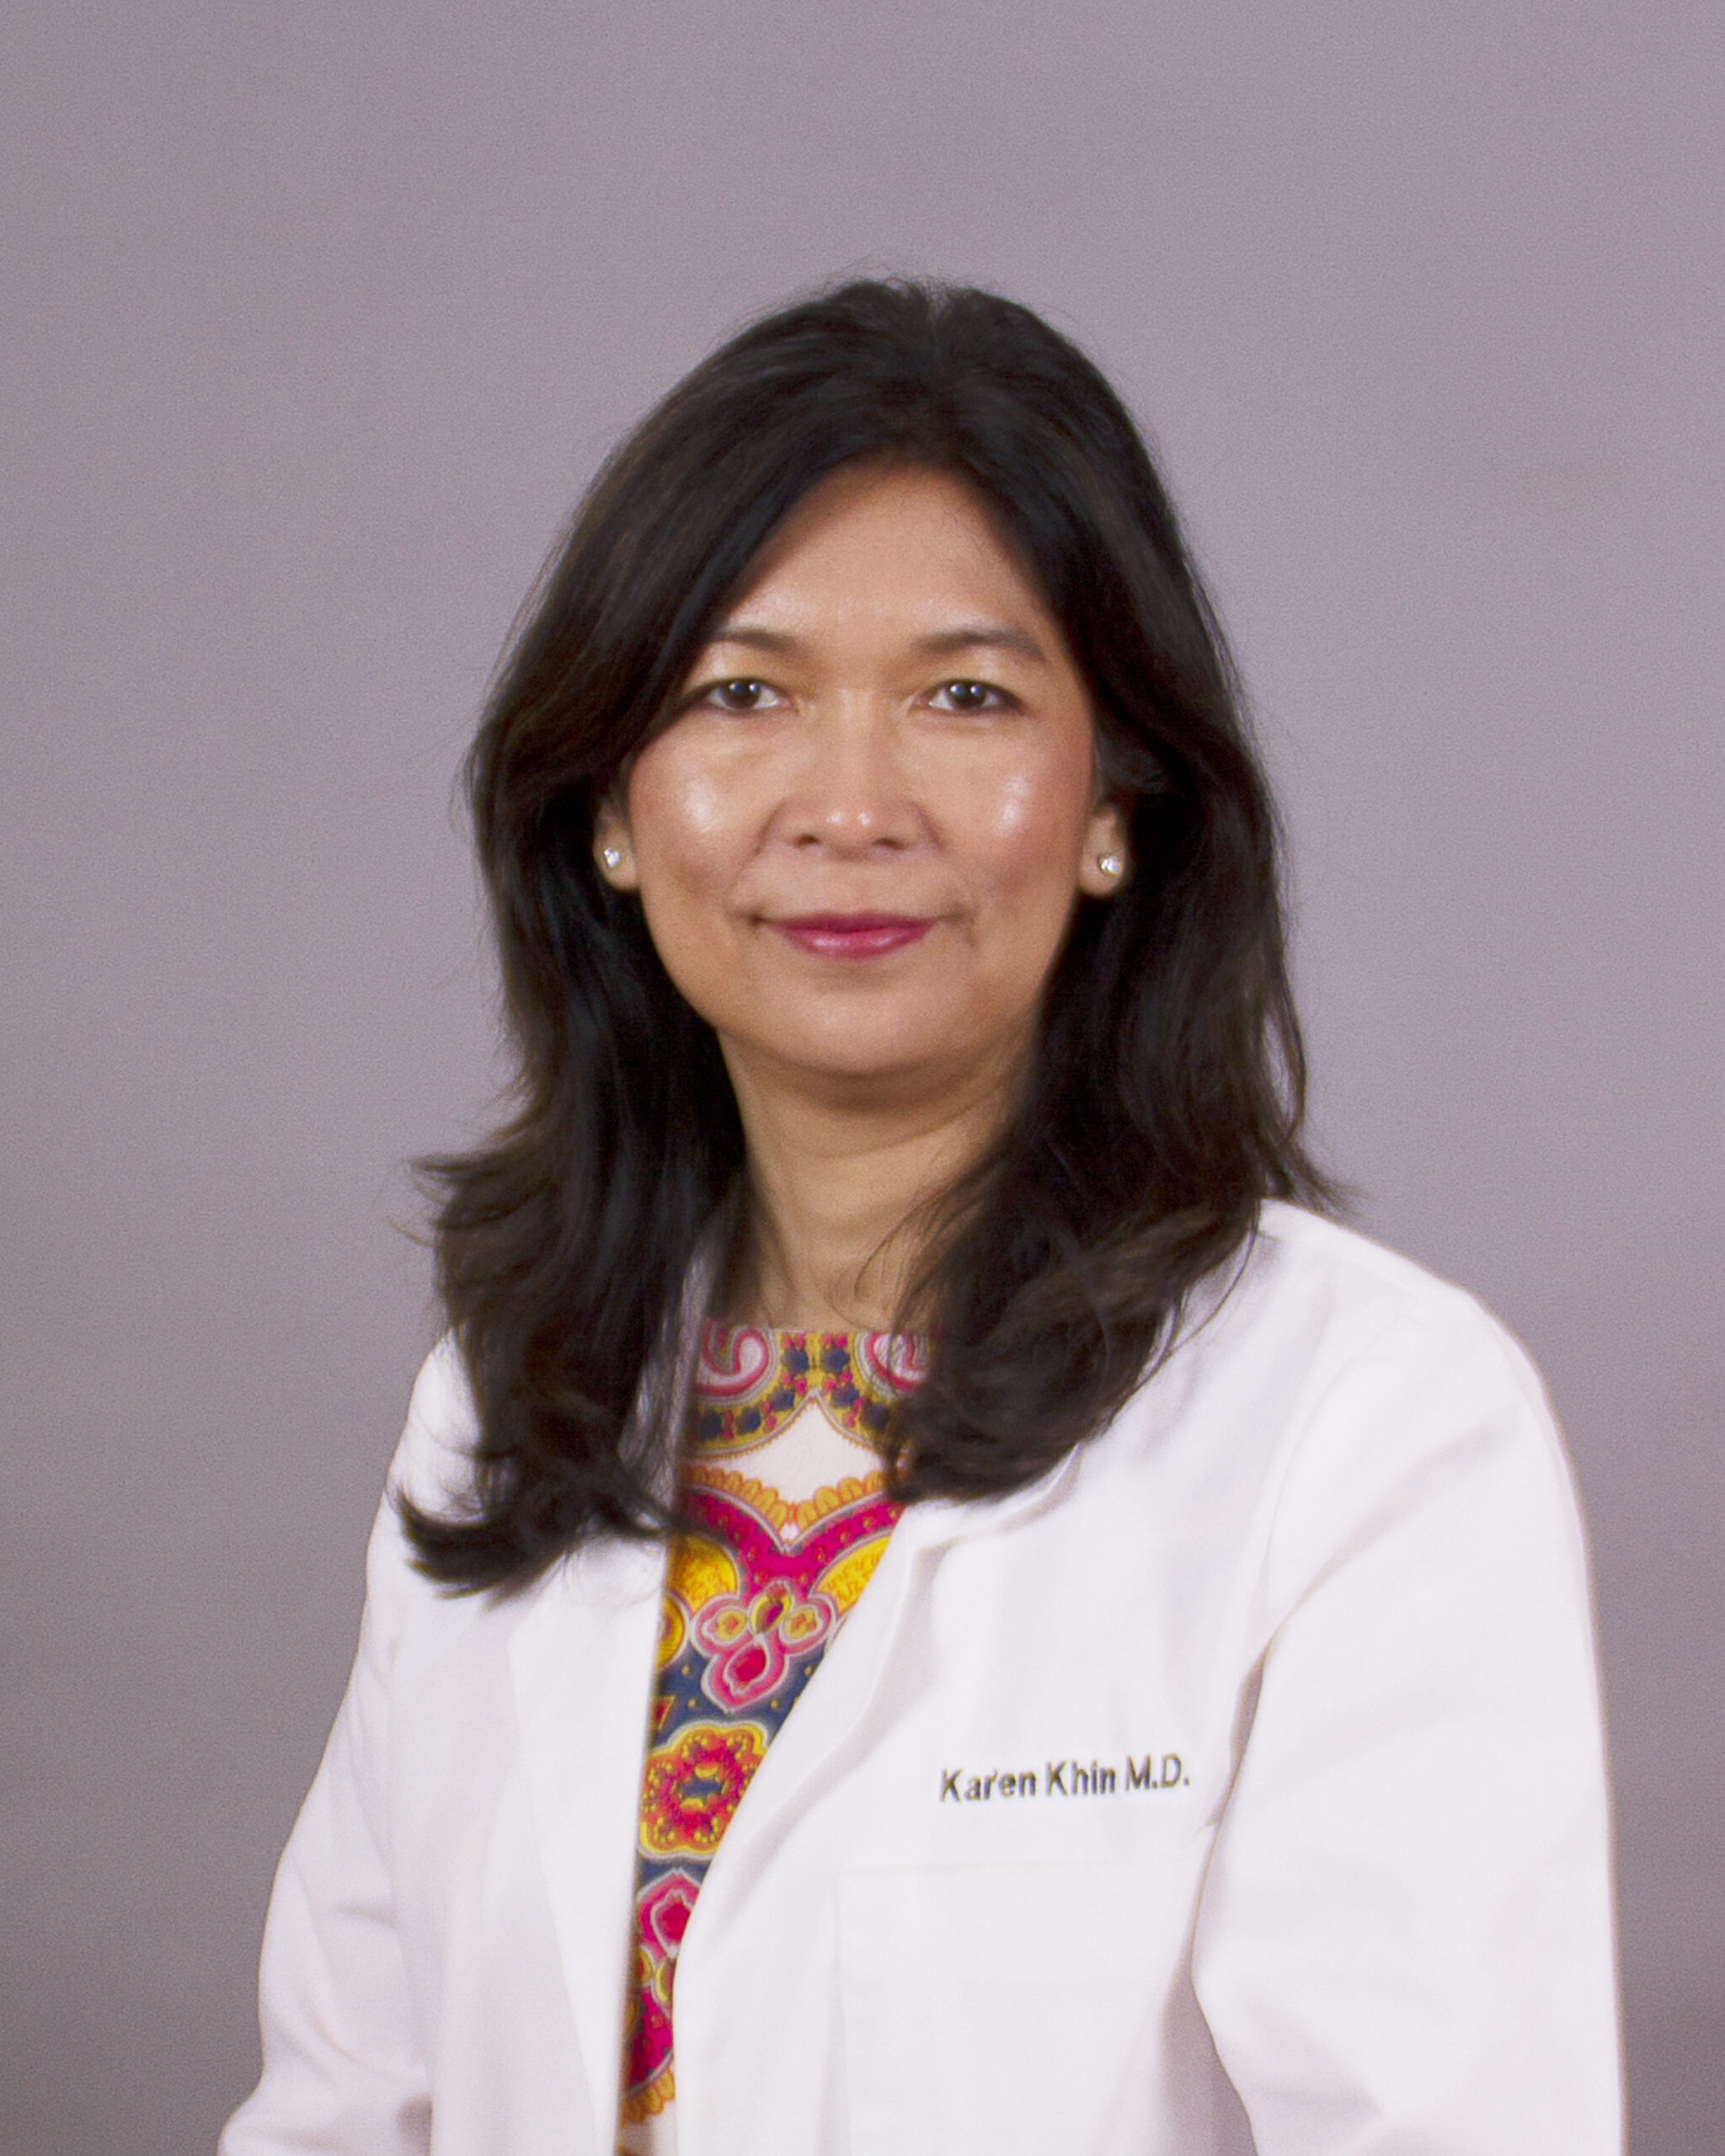 Karen K. Khin, M.D.